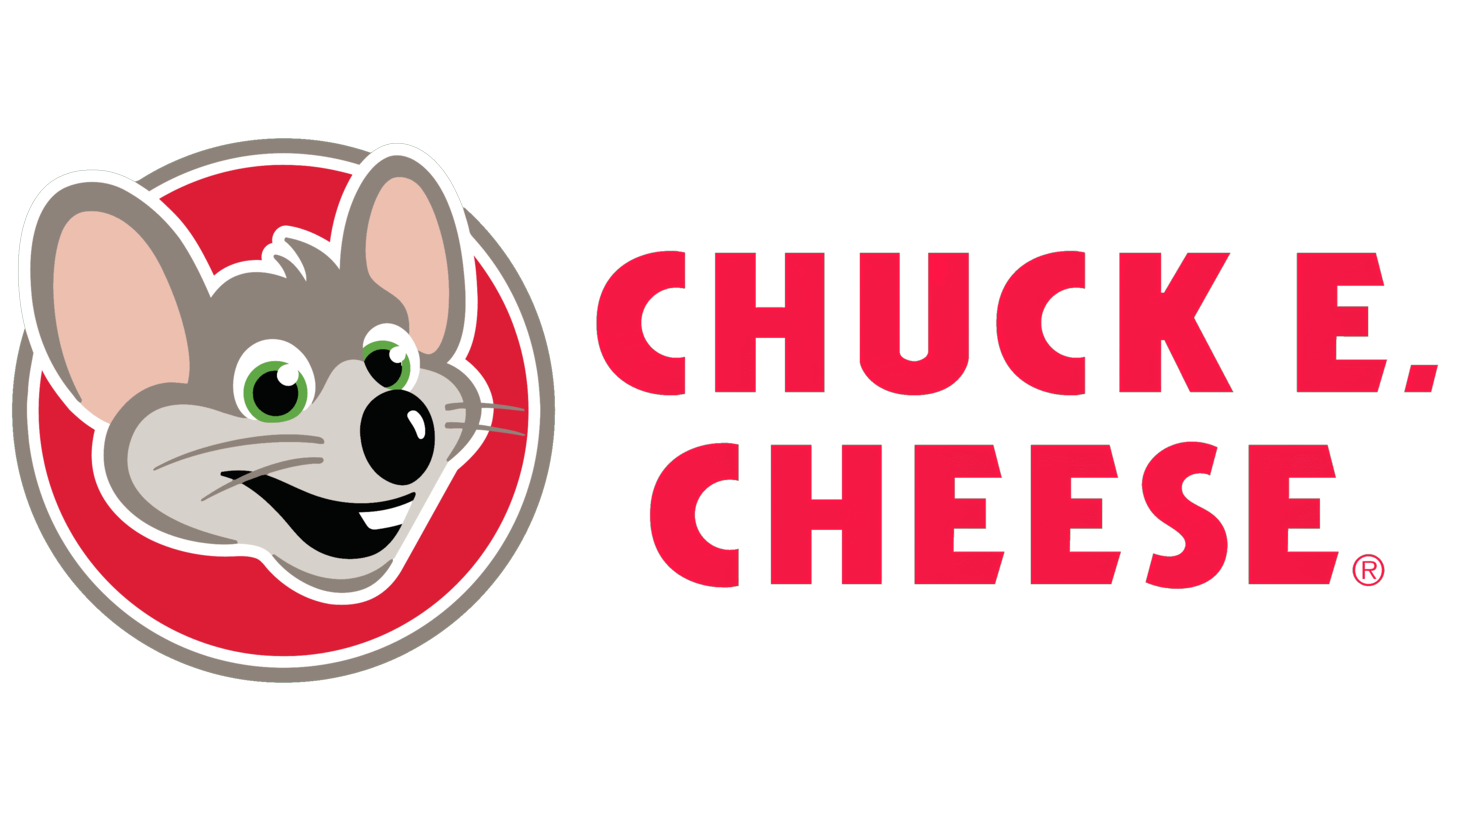 Chuck e. cheese sign